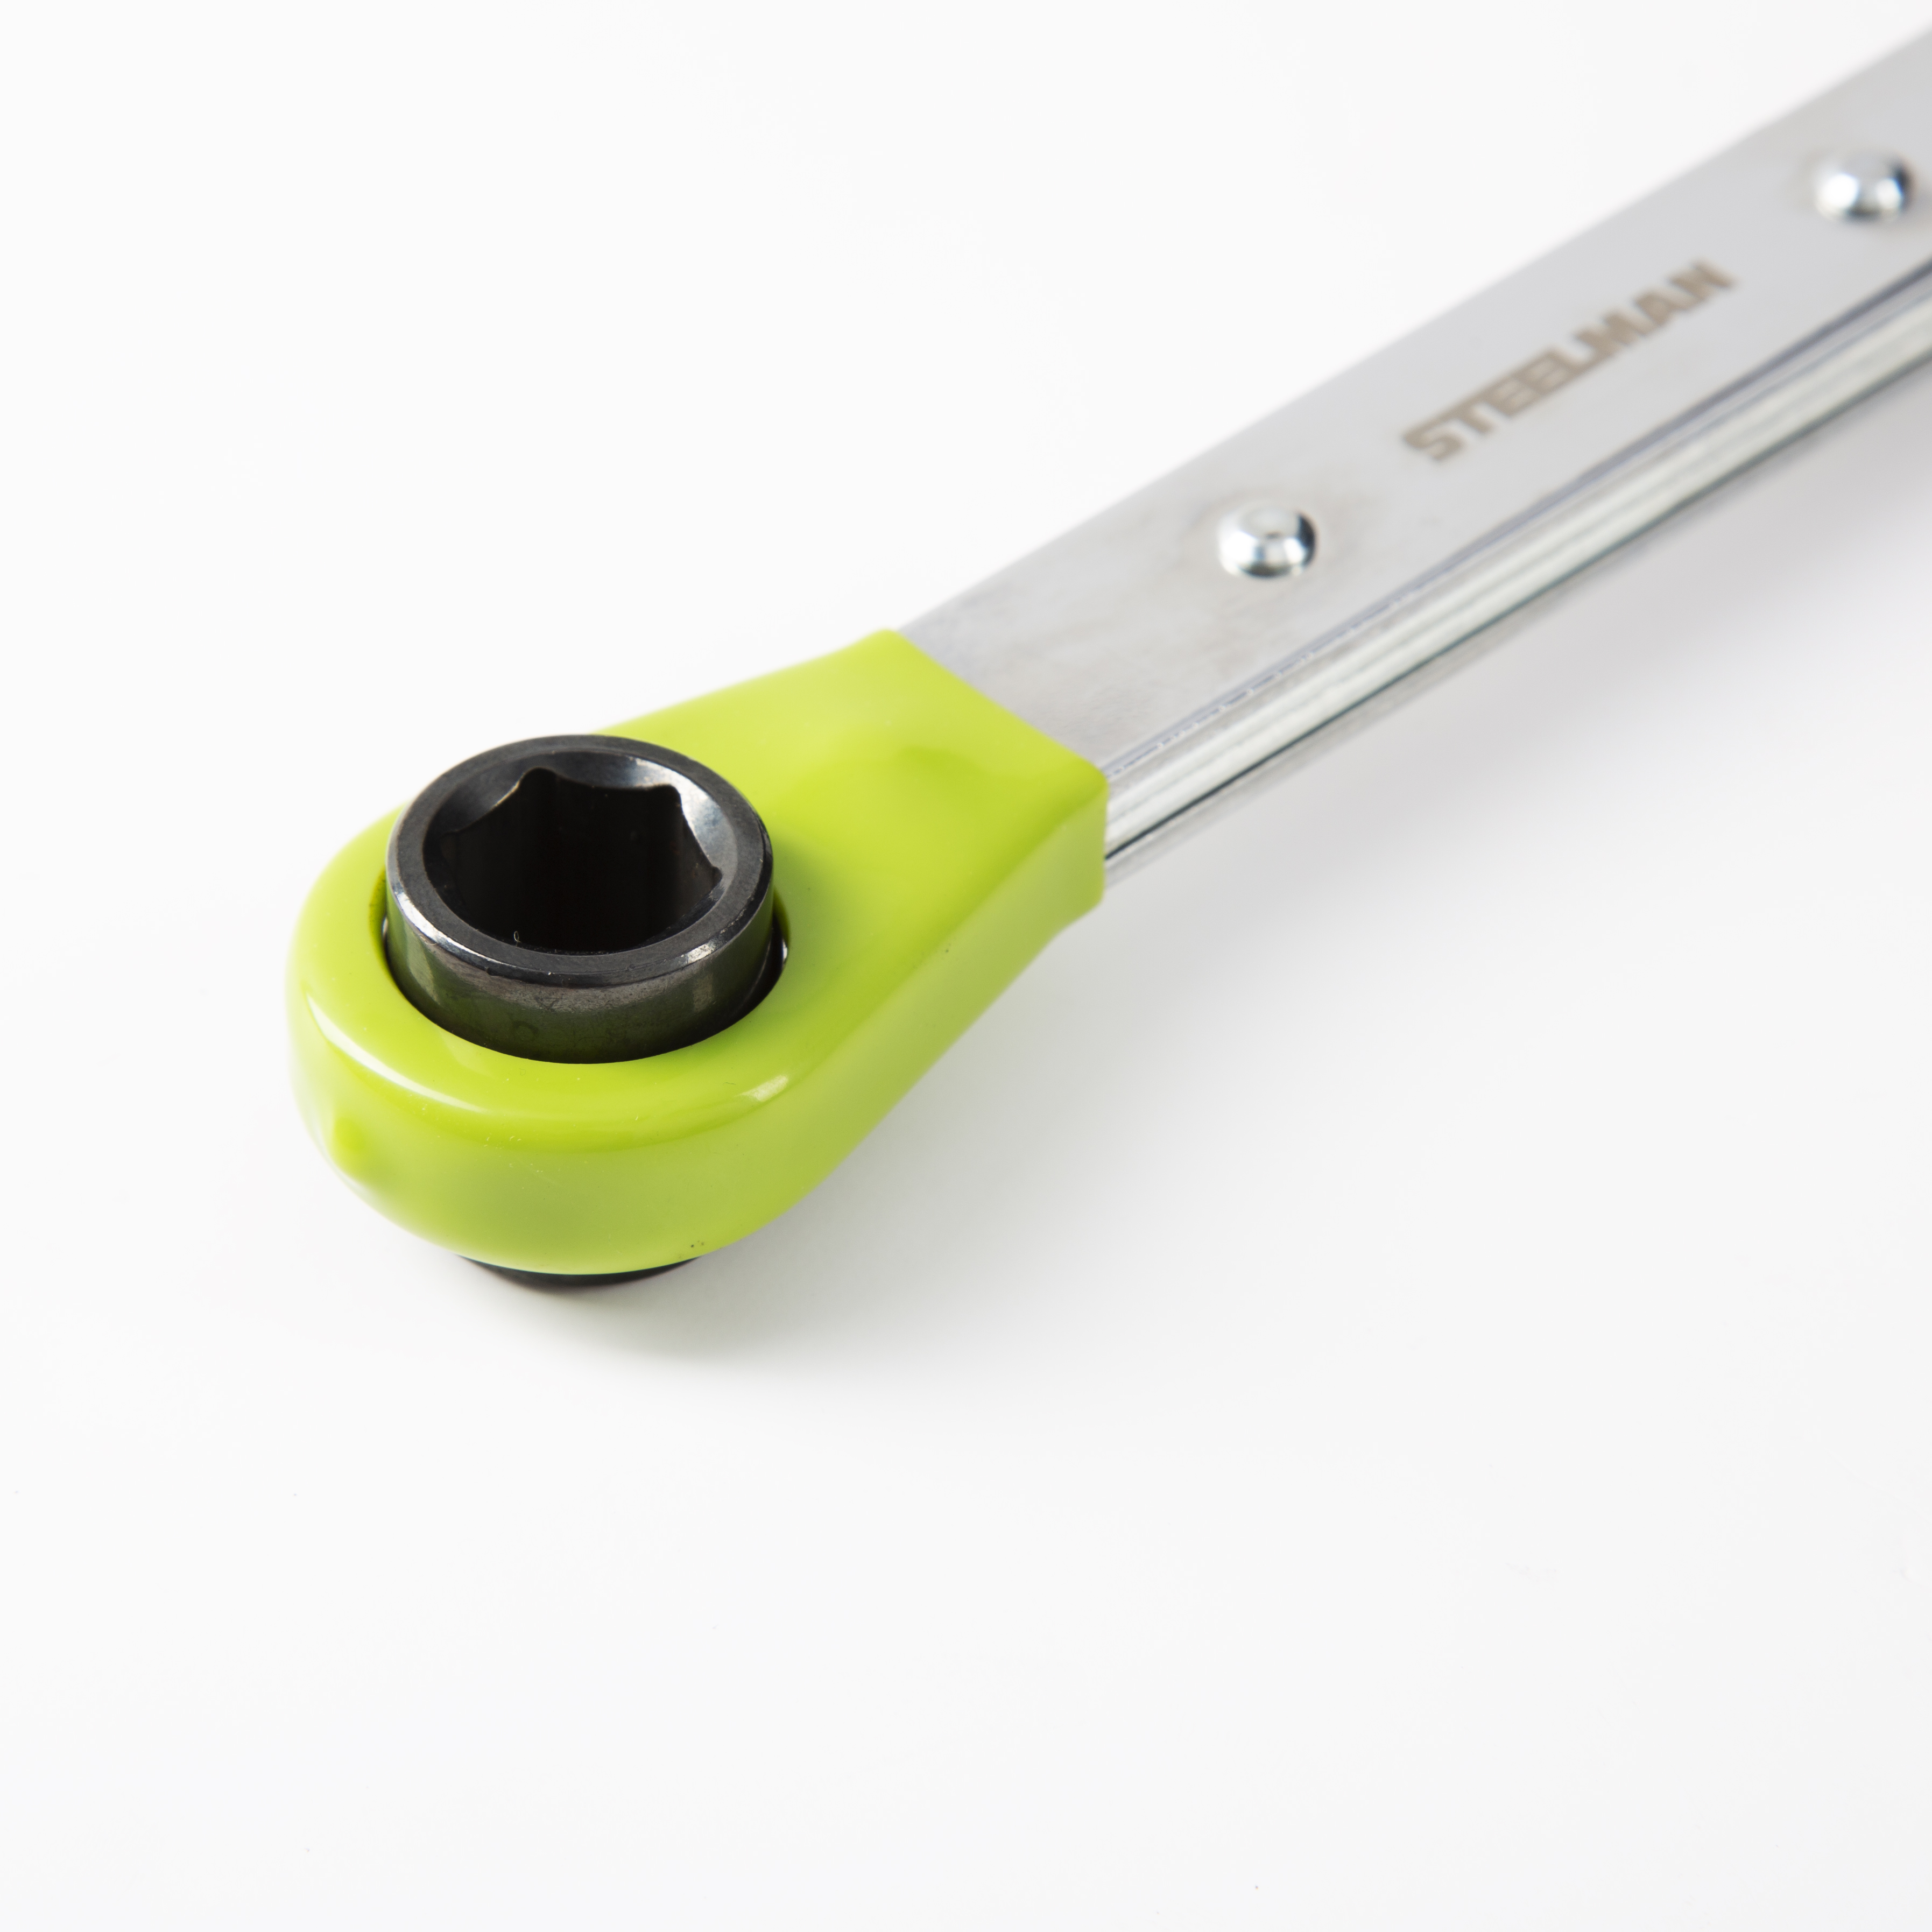 slack adjuster wrench size